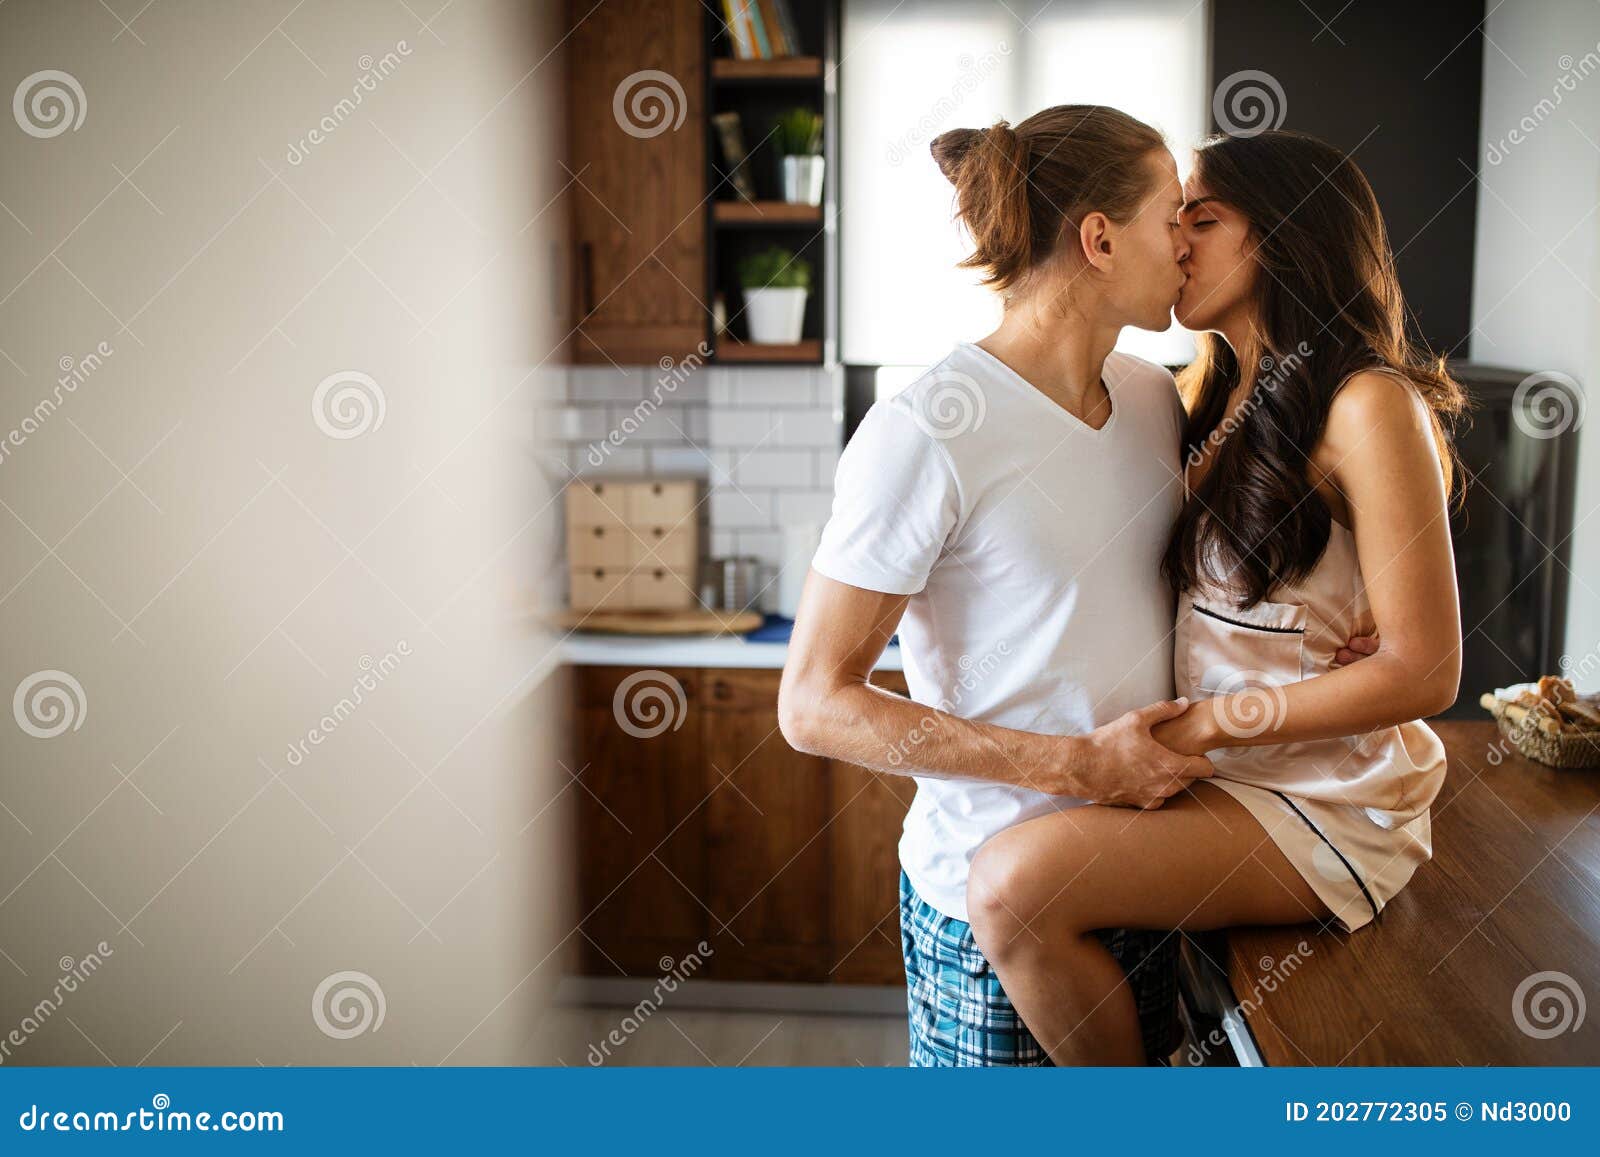 true loving married sex Sex Pics Hd